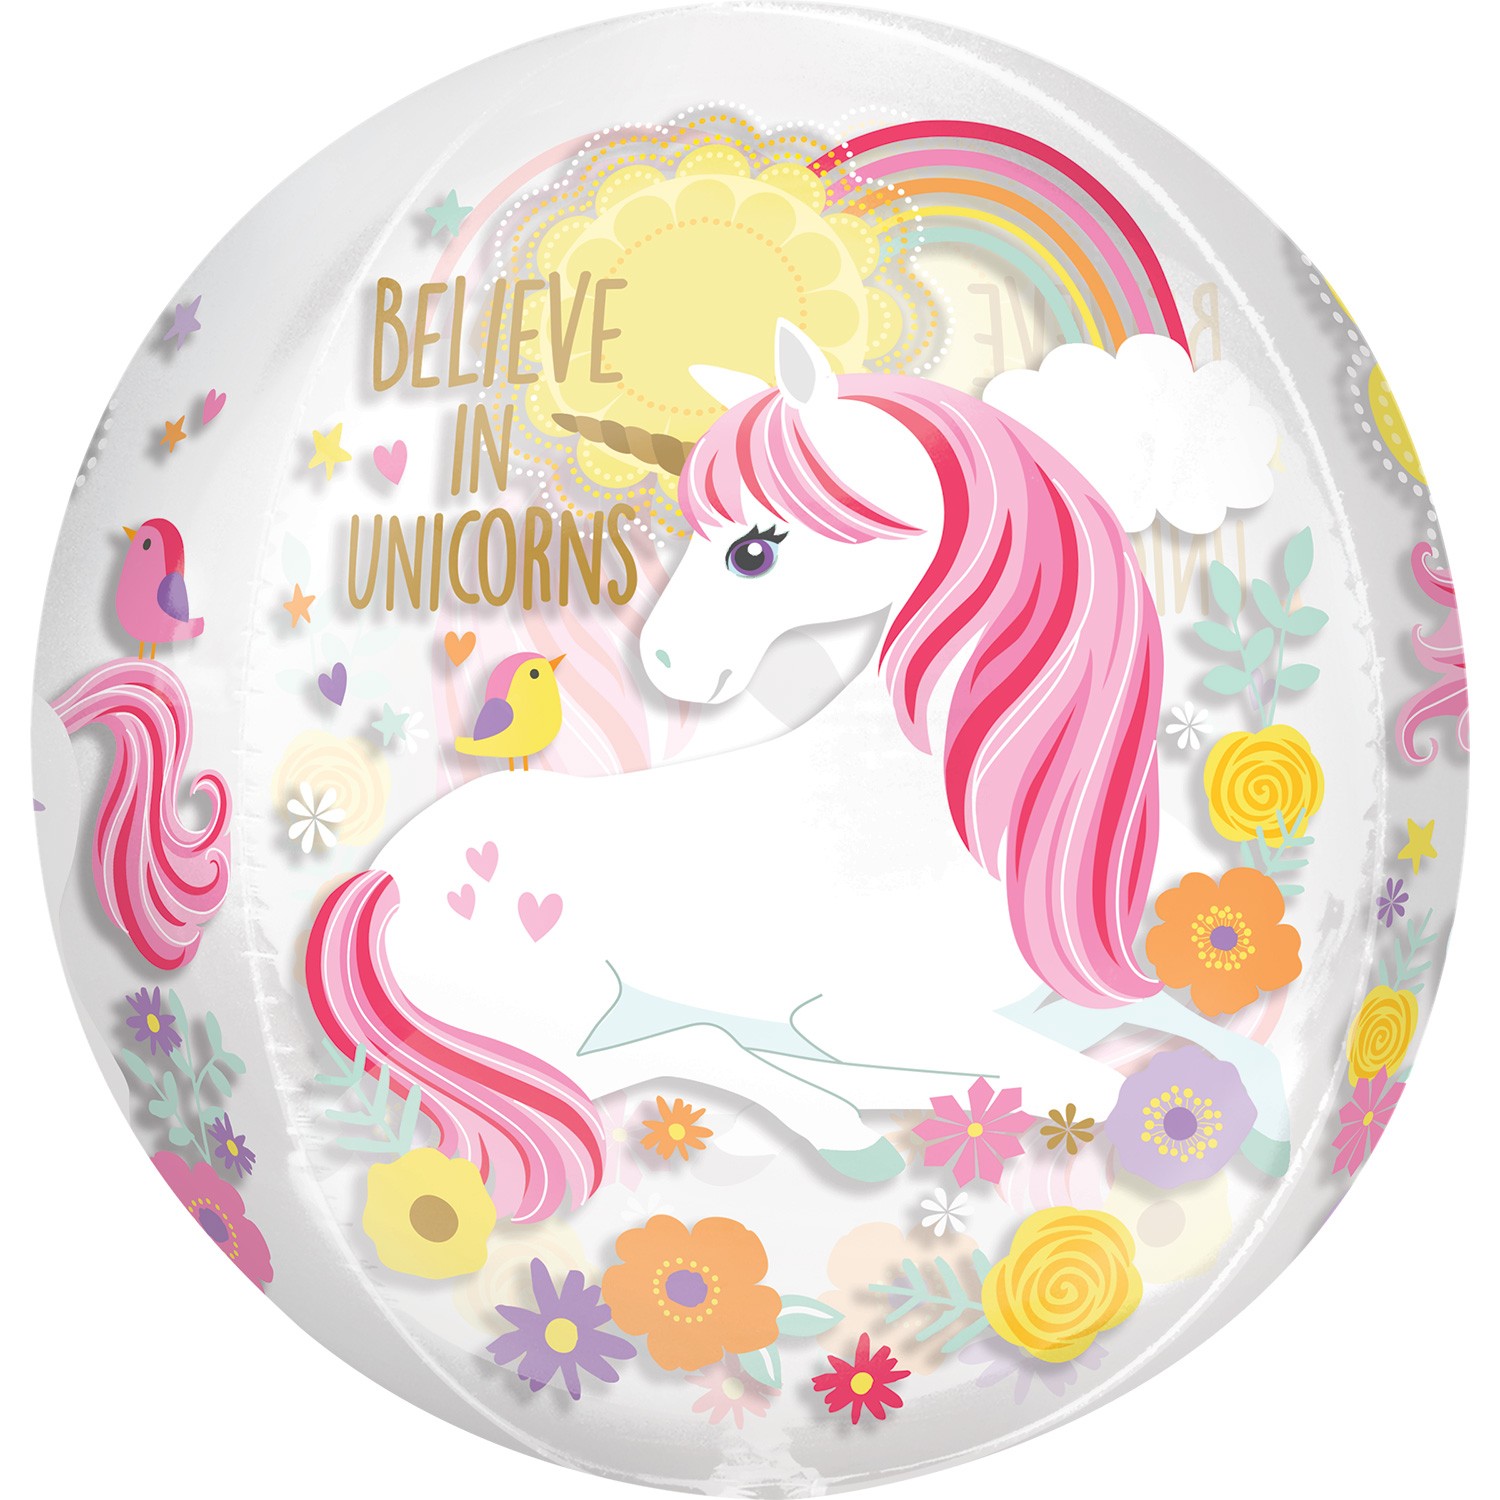 Unicorn 16" Orbz Balloon